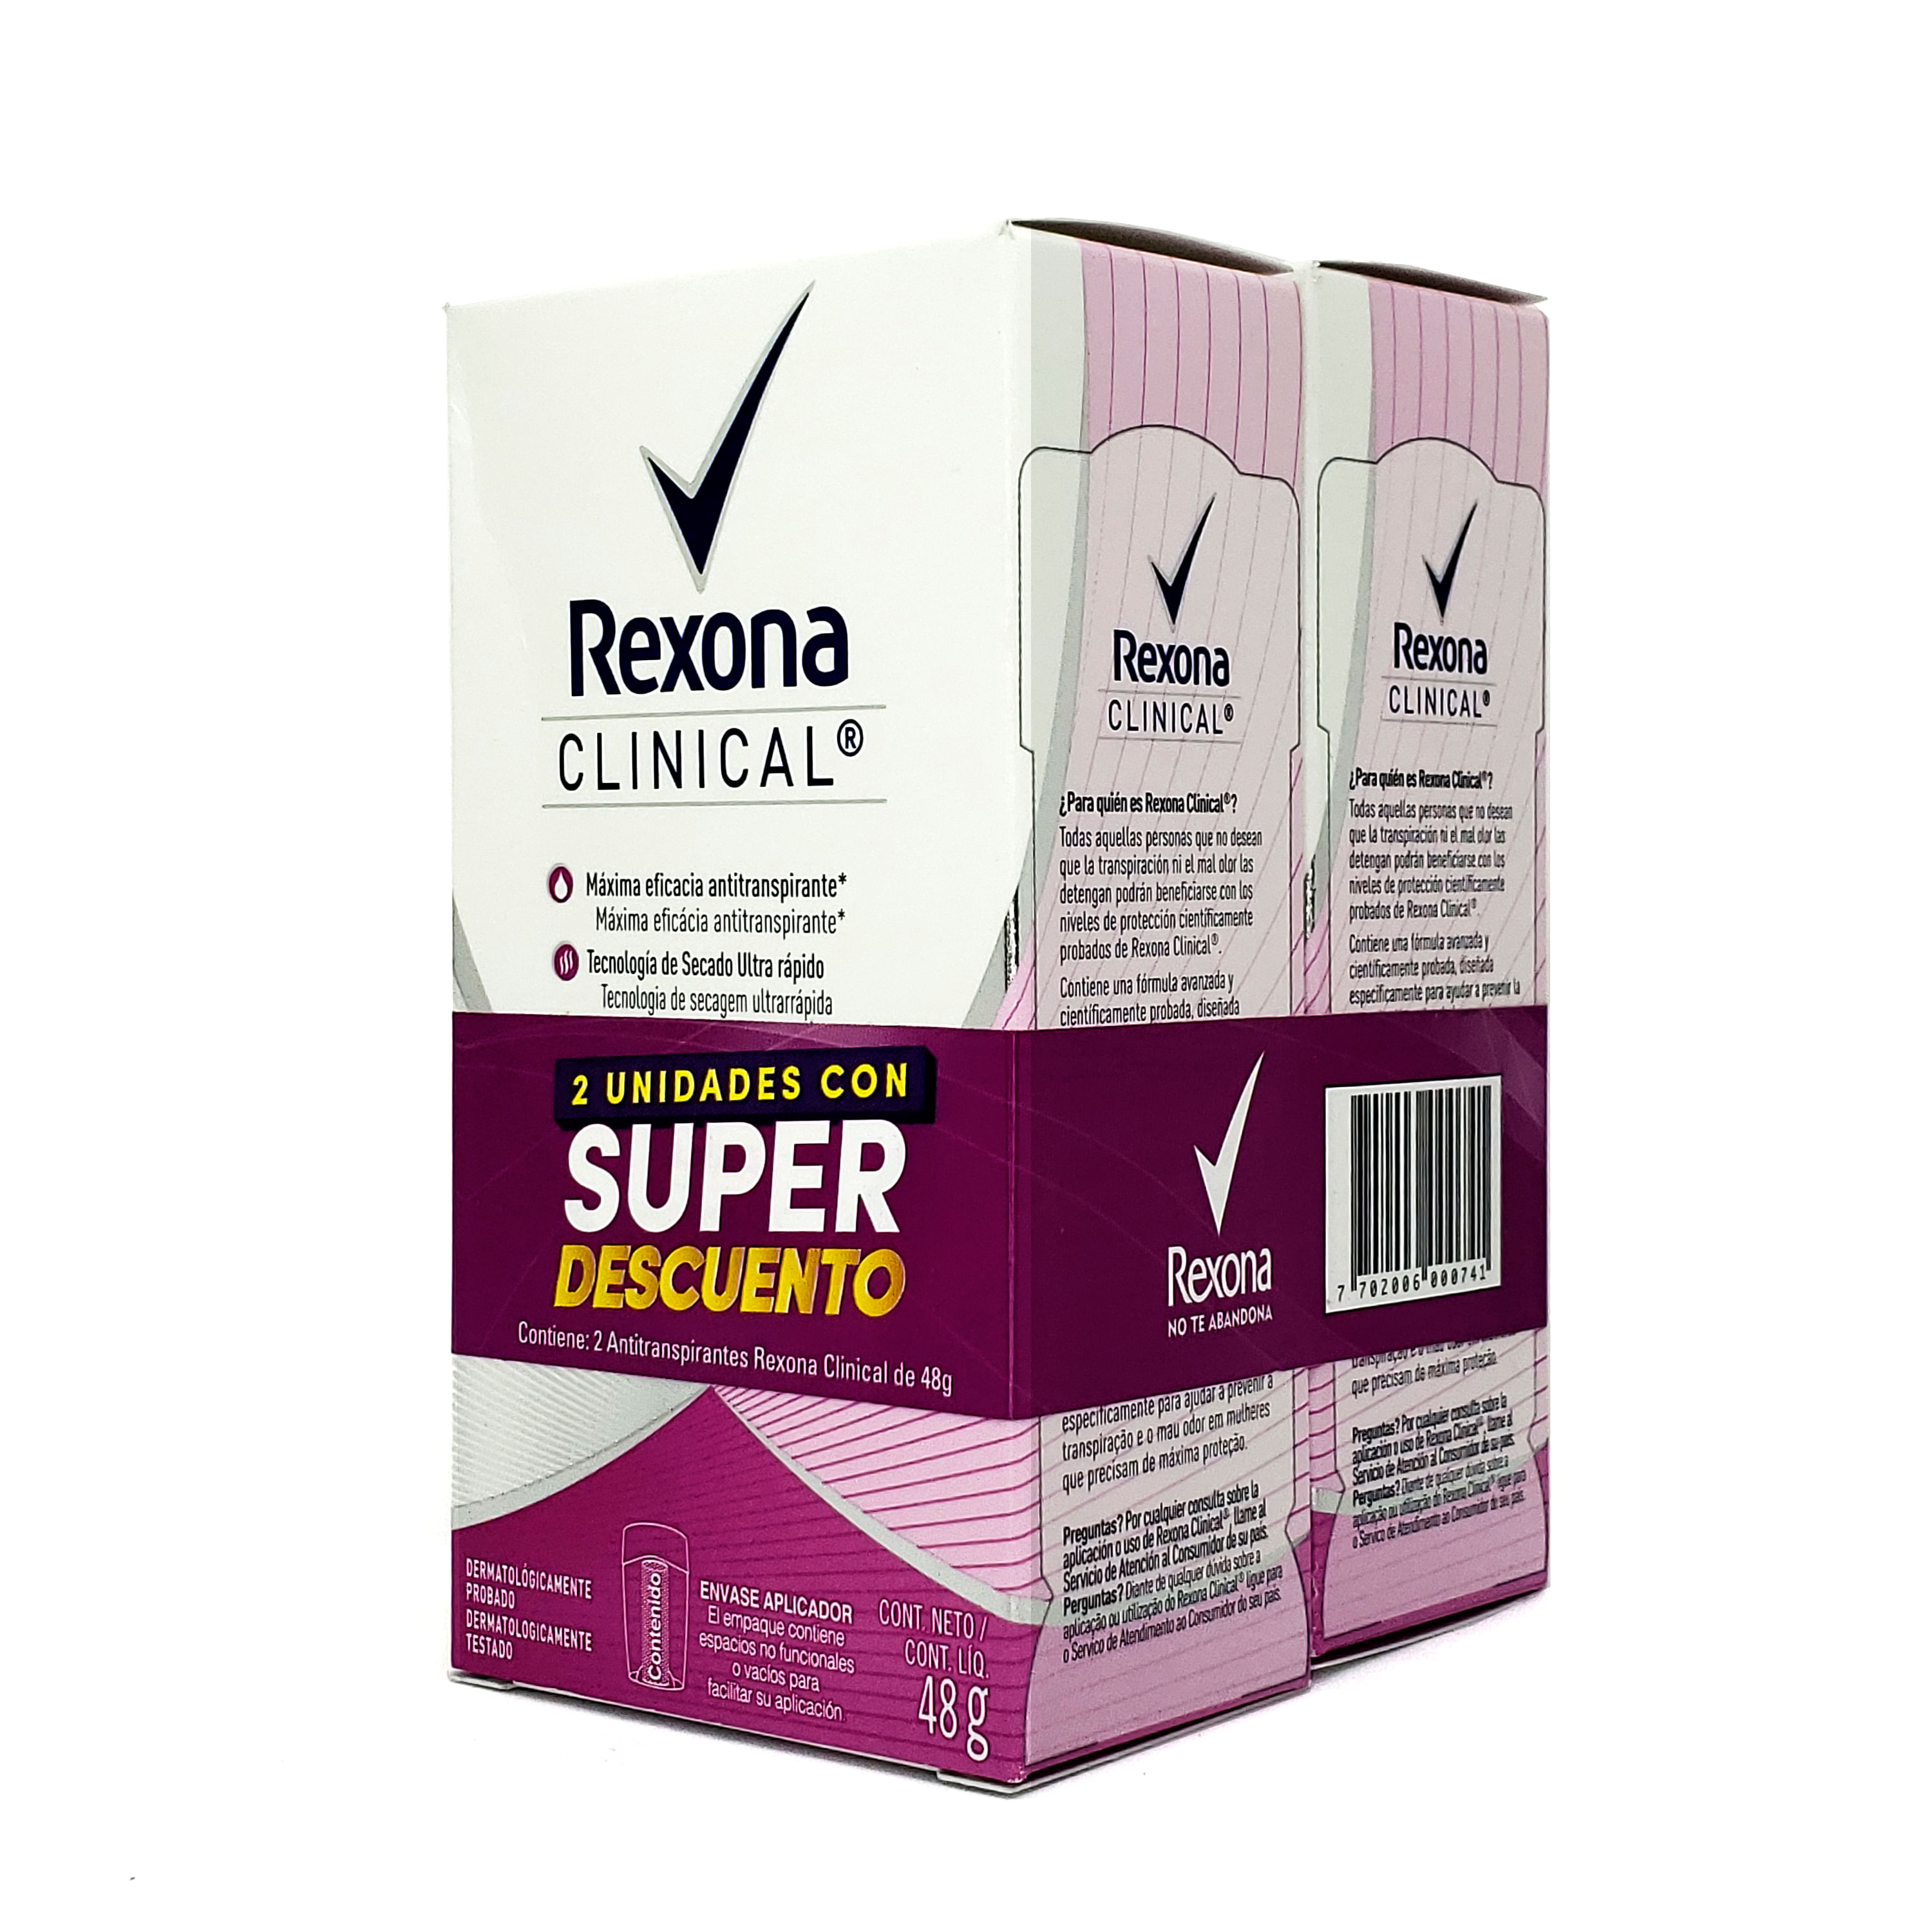 REXONA desodorante CLINICAL antitranspirante en crema para dama 48 g